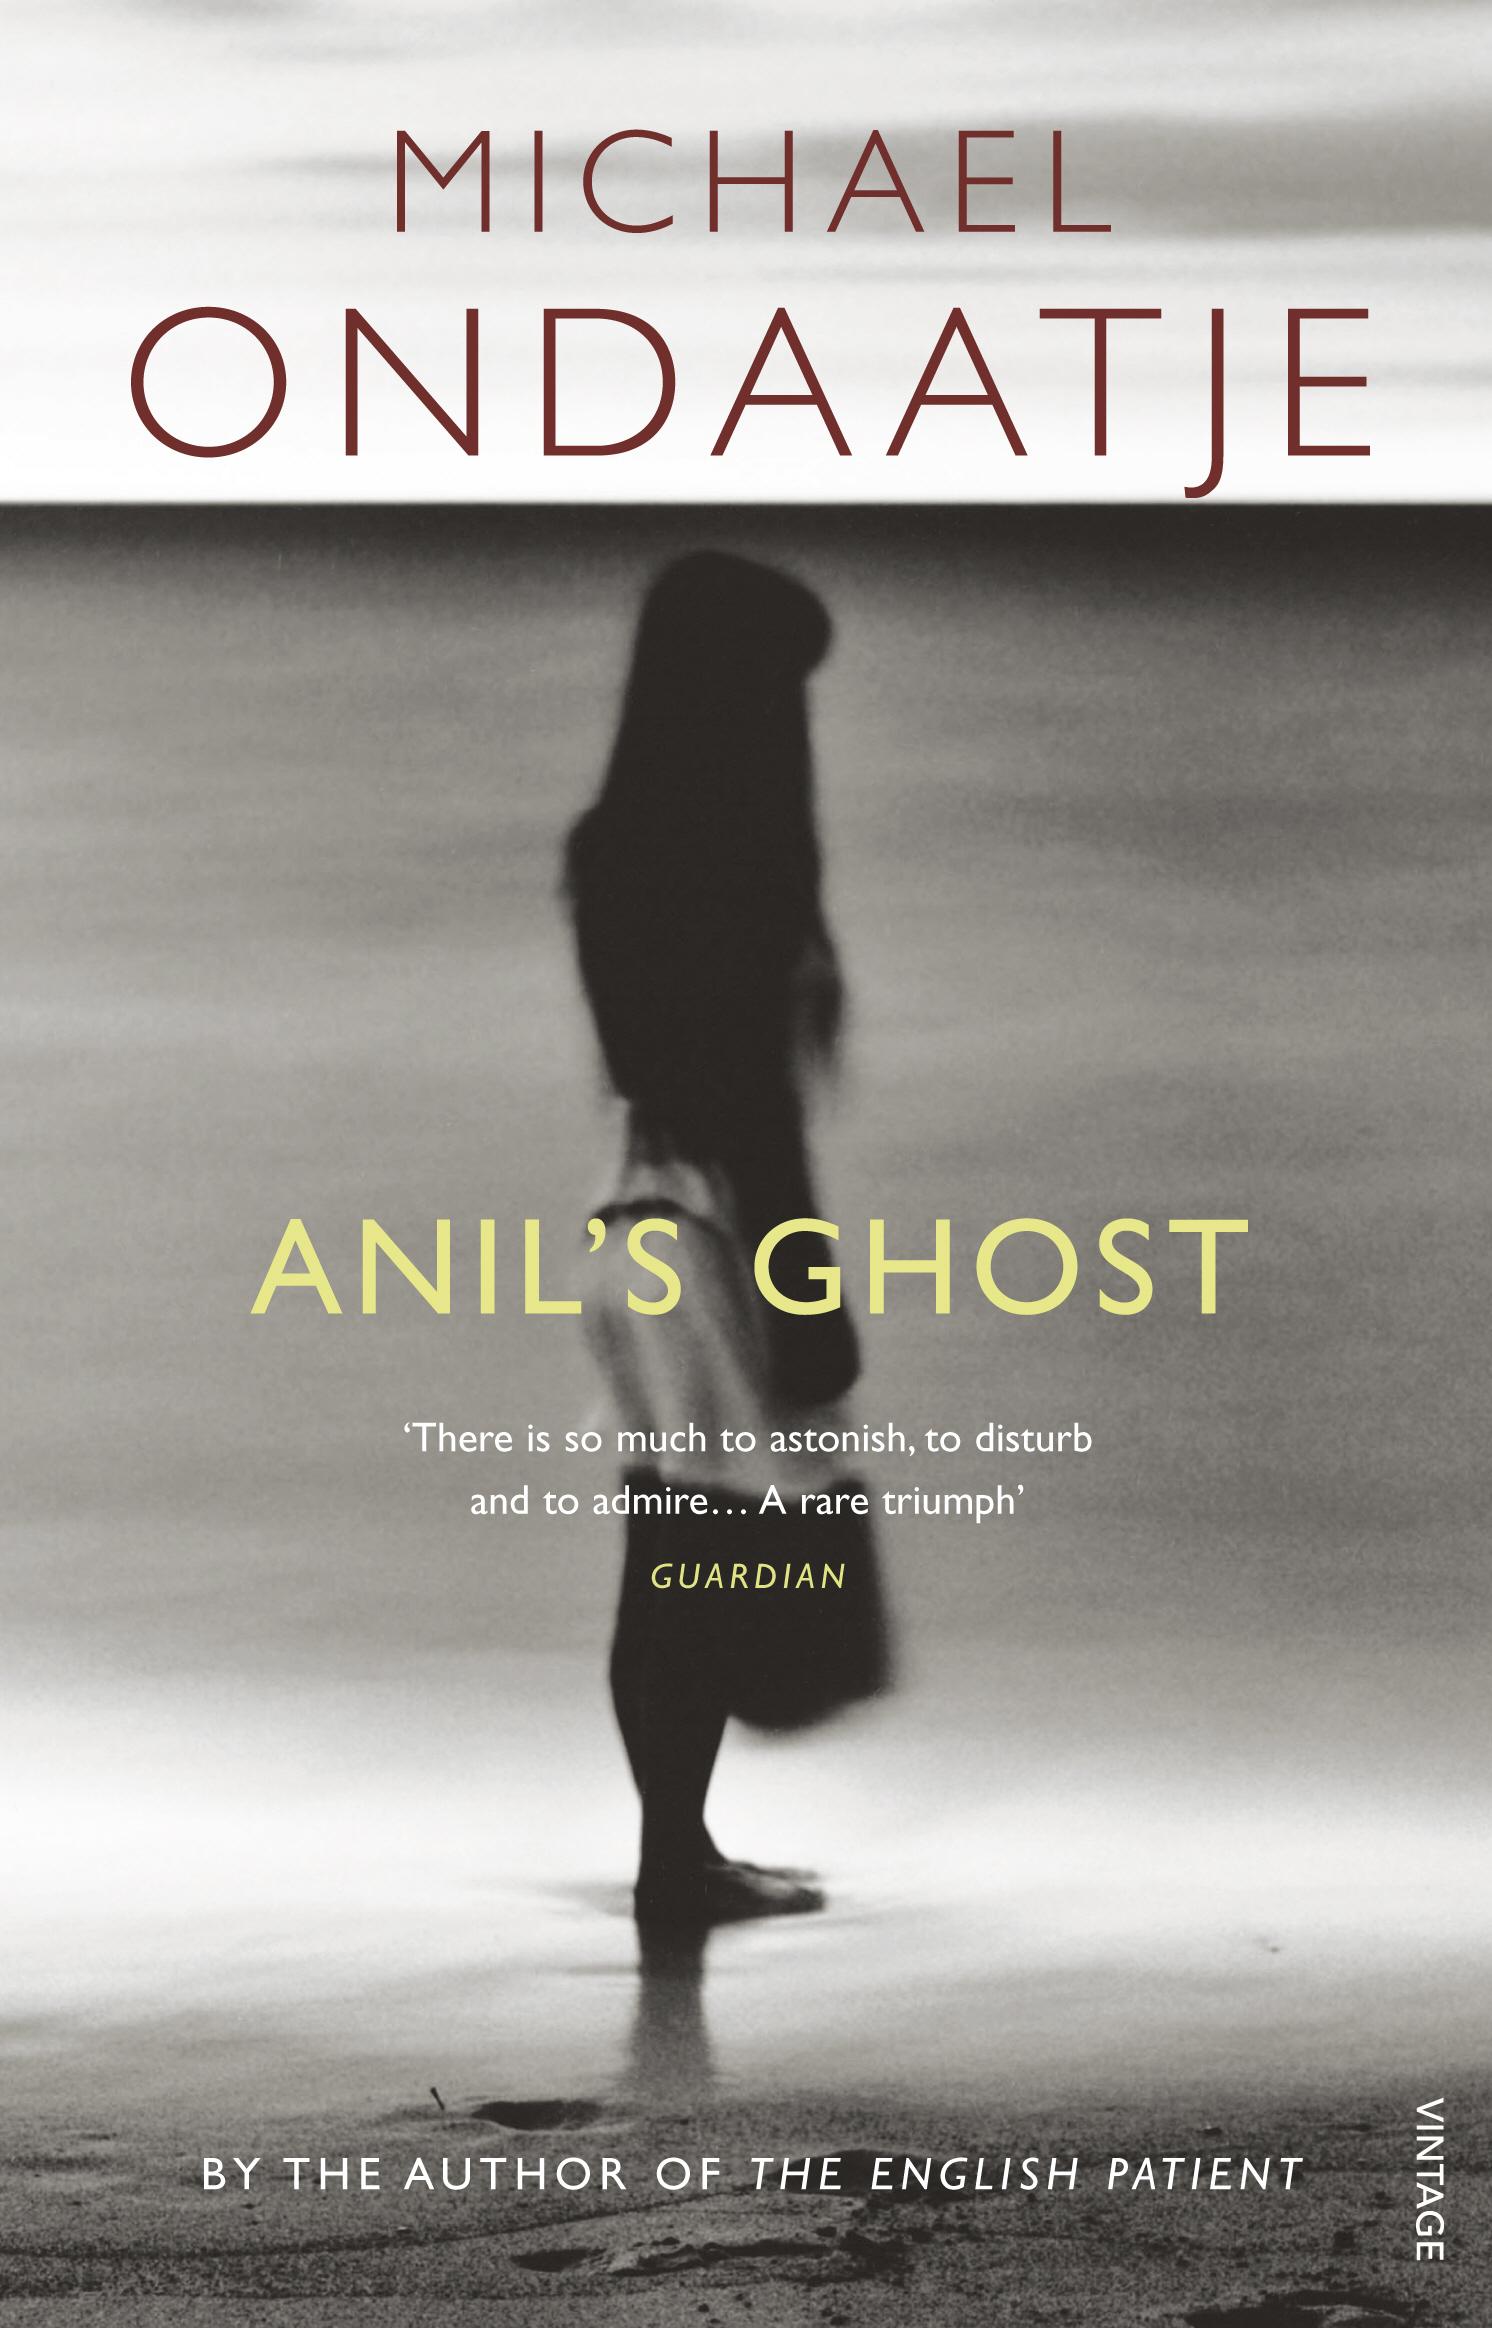 Anil's Ghost / Michael Ondaatje / Taschenbuch / B-format paperback / Kartoniert / Broschiert / Englisch / 2011 / Random House UK Ltd / EAN 9780099554455 - Ondaatje, Michael